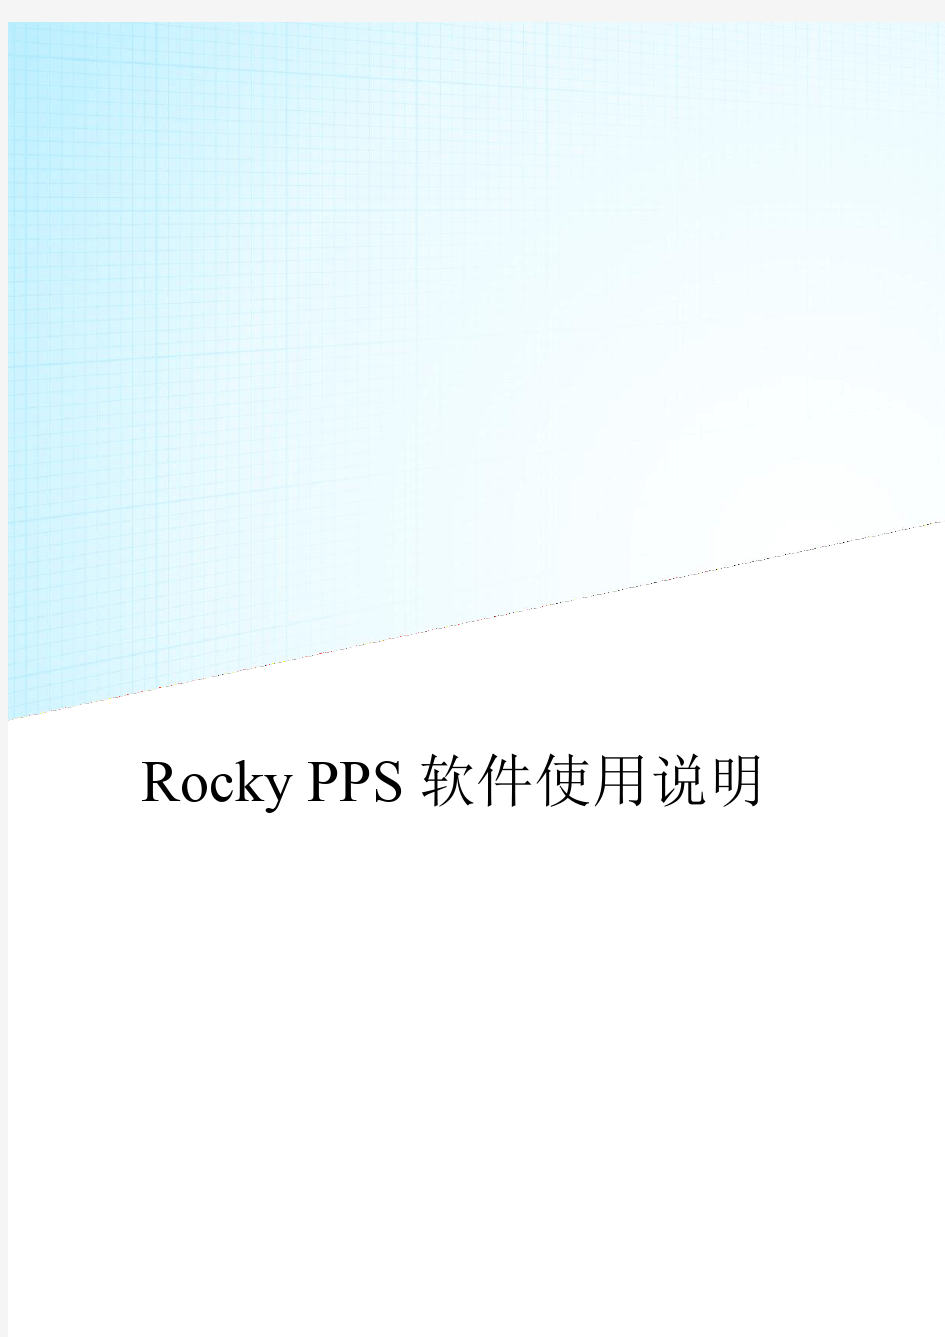 Rocky PPS无人机后差飞软件